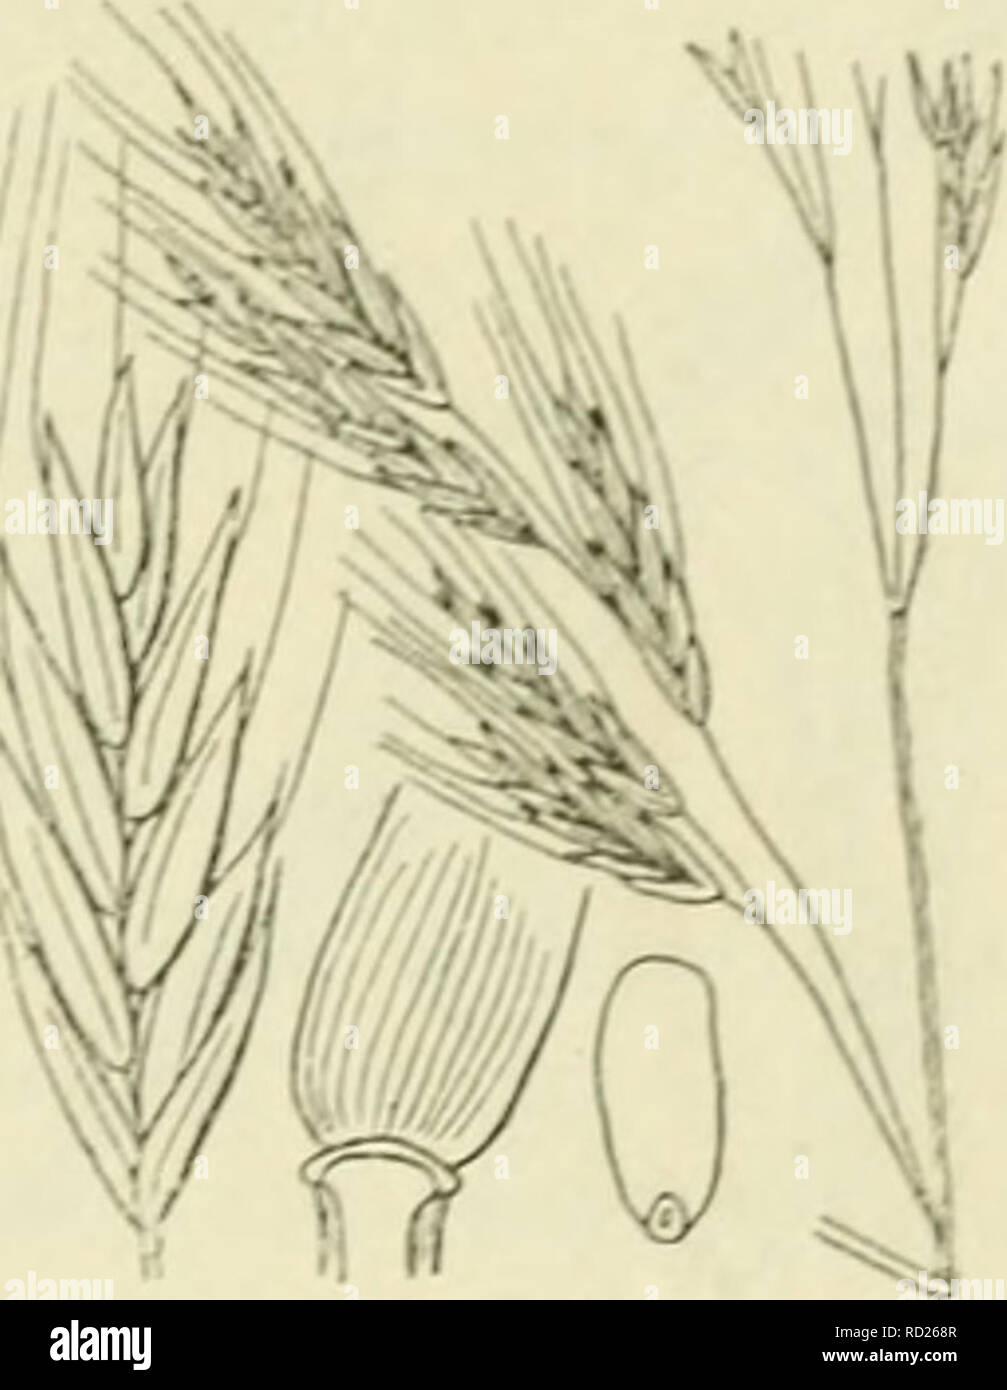 . De flora van Nederland. Plants. FAMILIE 18. — GRAMINAE. 527. Festuca gigantea Fig. 465. draagt 3-5 bladen, is glad en bijna tot aan den voet der pluim door de bovenste bladscheede omhuld. De bladen zijn in de jeugd opgerold, de onderste hebben een ruwe scheede en een meest 5-15 mM breede, aan den voet sterk geoorde, boven dof (iets grijs-)groene, van onderen donker- groene, glanzende, aan den rand zeer ruwe schijf. De pluim is groot, tot 4 dM lang, eirond tot langwerpig-eirond, ver afstaand, ten slotte over- hangend met dunne takken, waarvan de onderste takjes aan den voet hebben. De aartjes Stock Photo